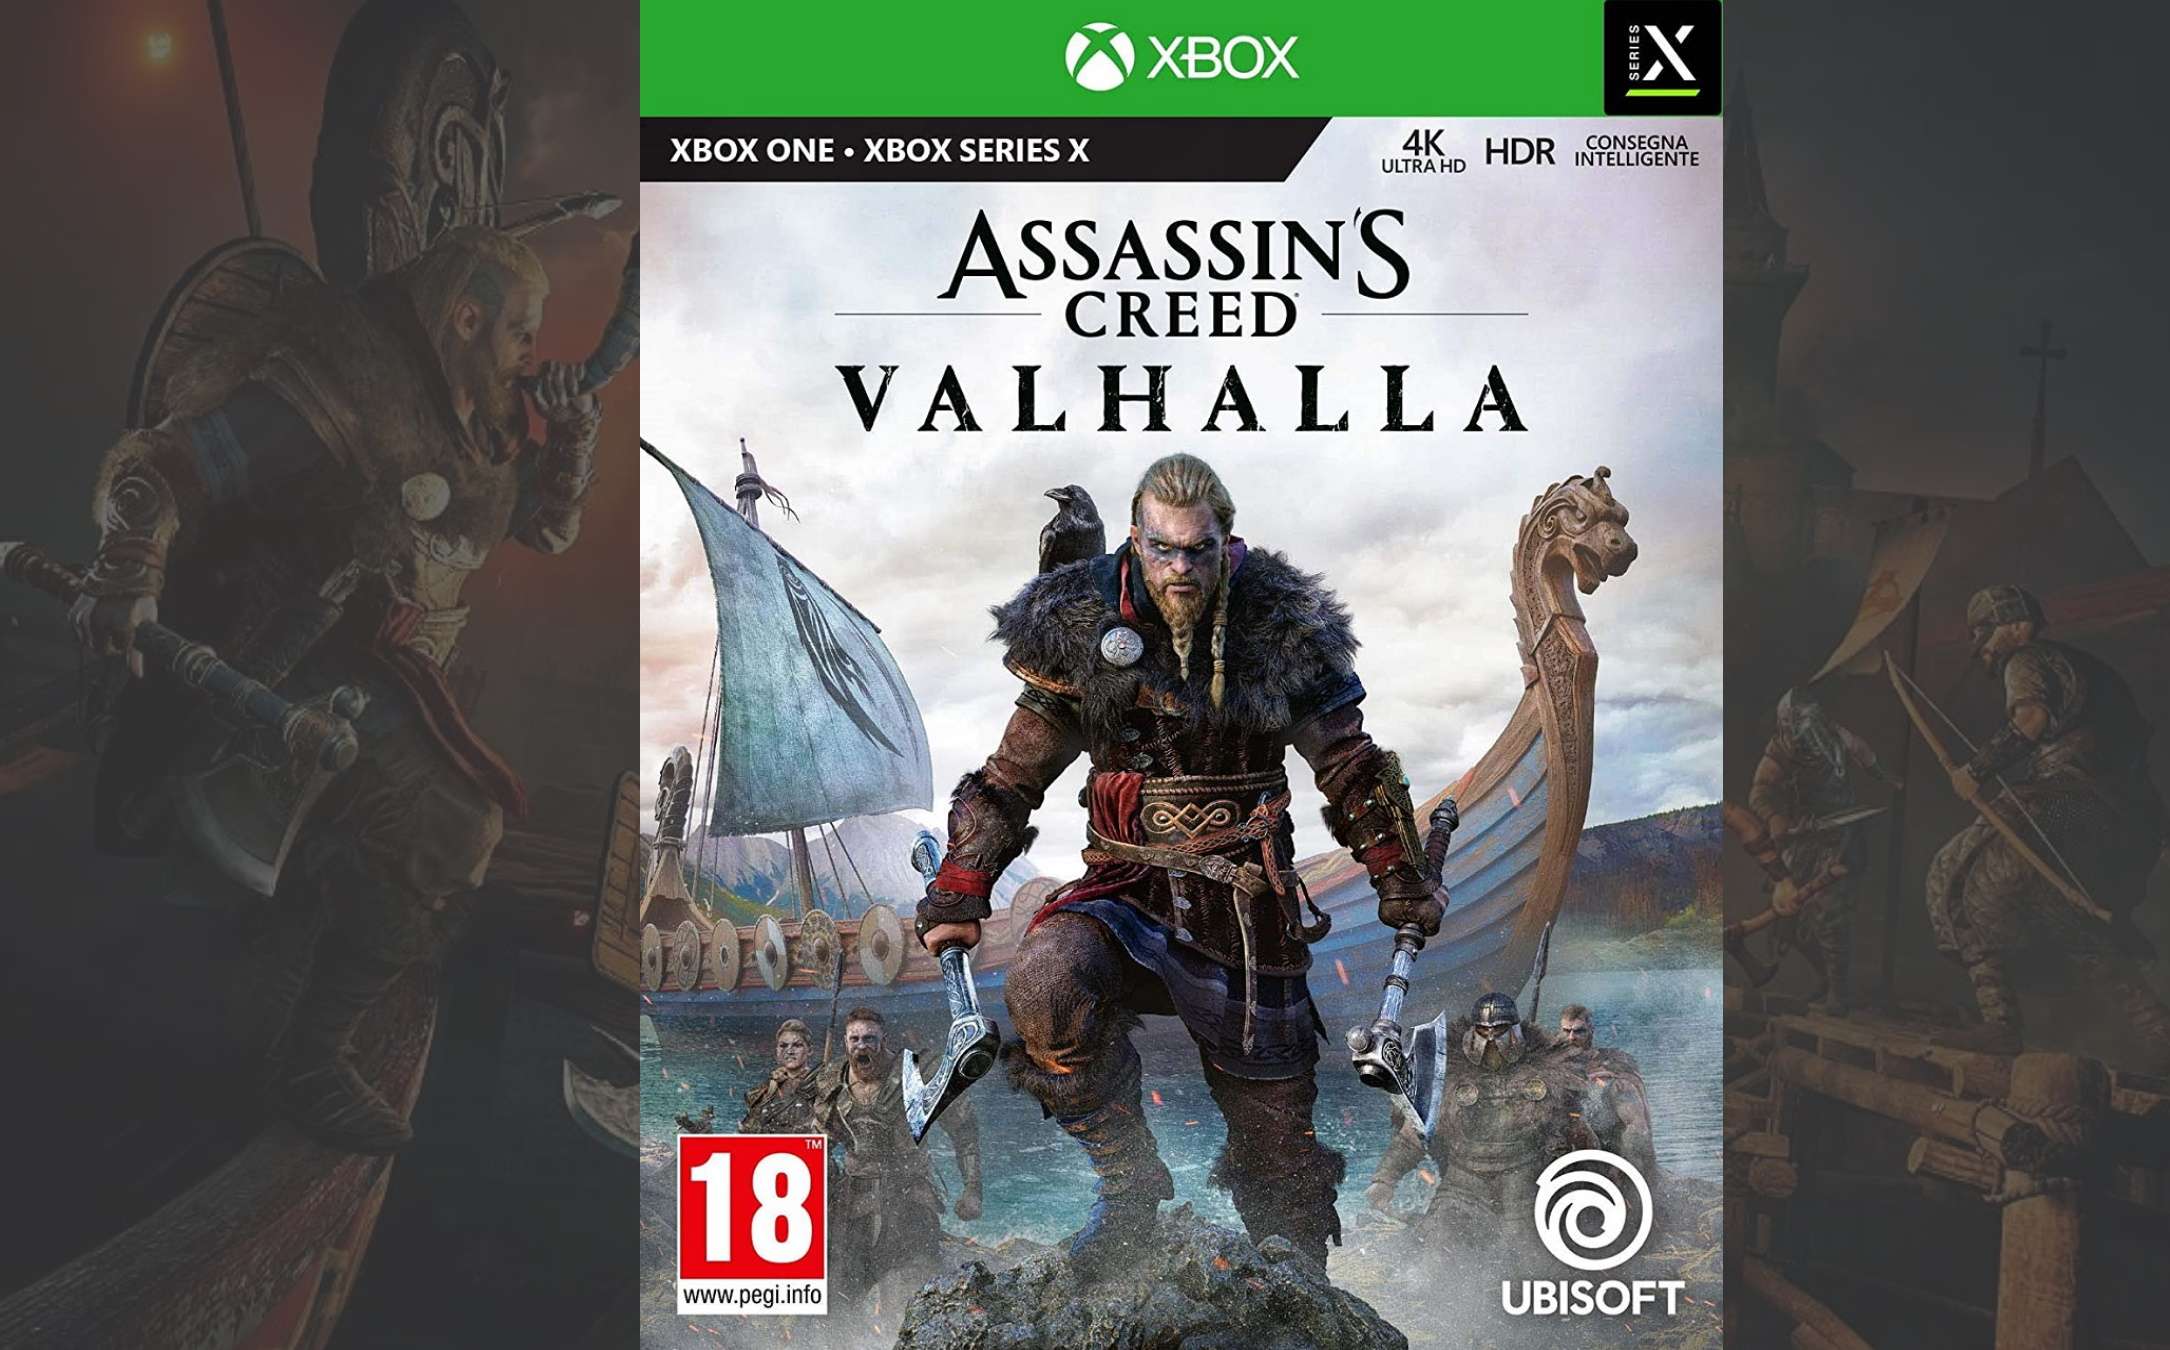 Assassin's Creed Valhalla per Xbox al minimo storico scontato di 50 euro